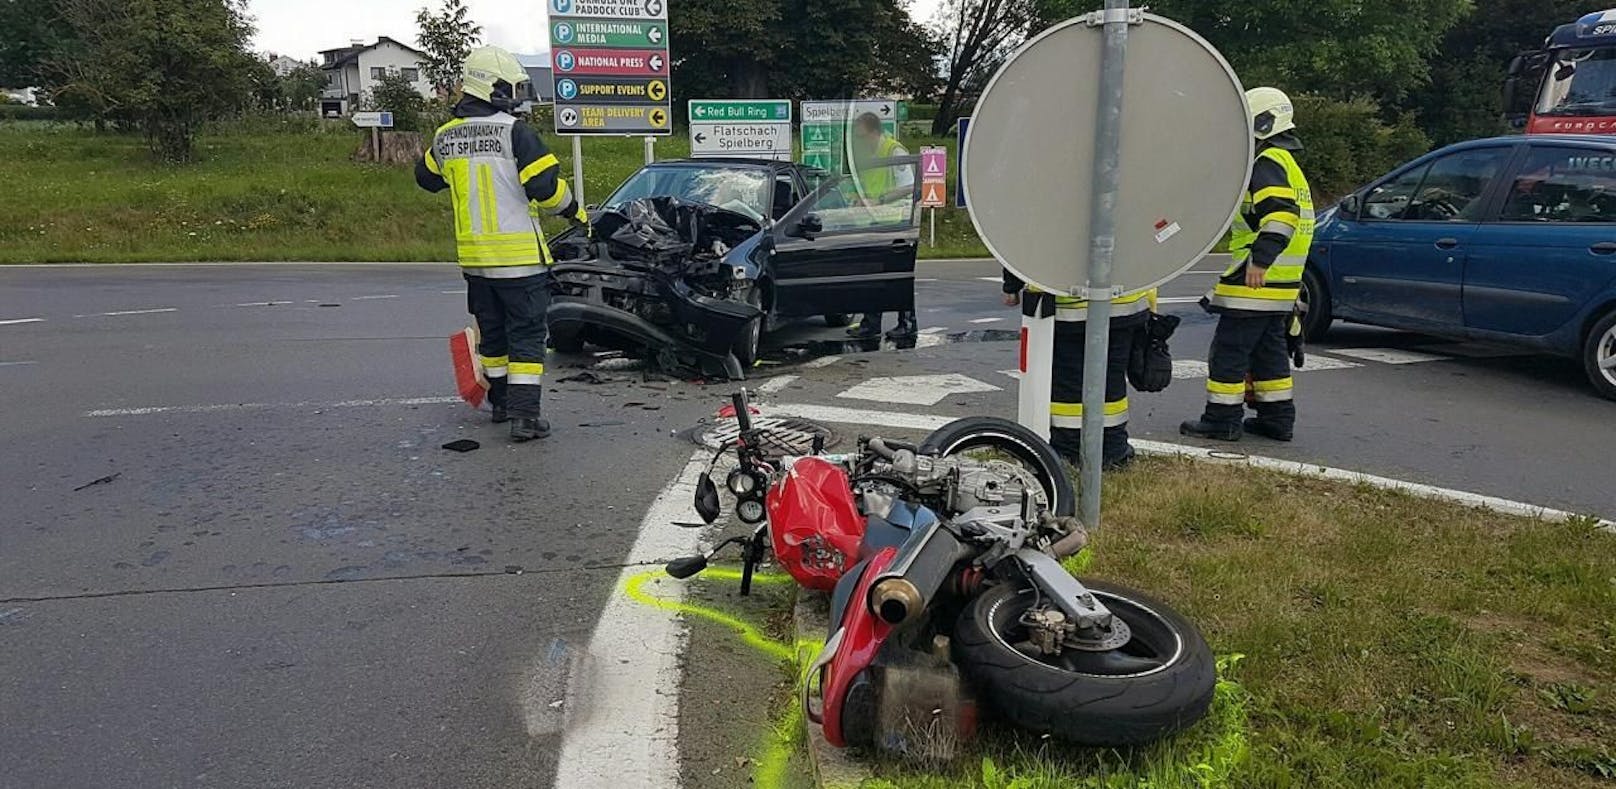 Auto rammt Motorrad, Biker stirbt in Wiese